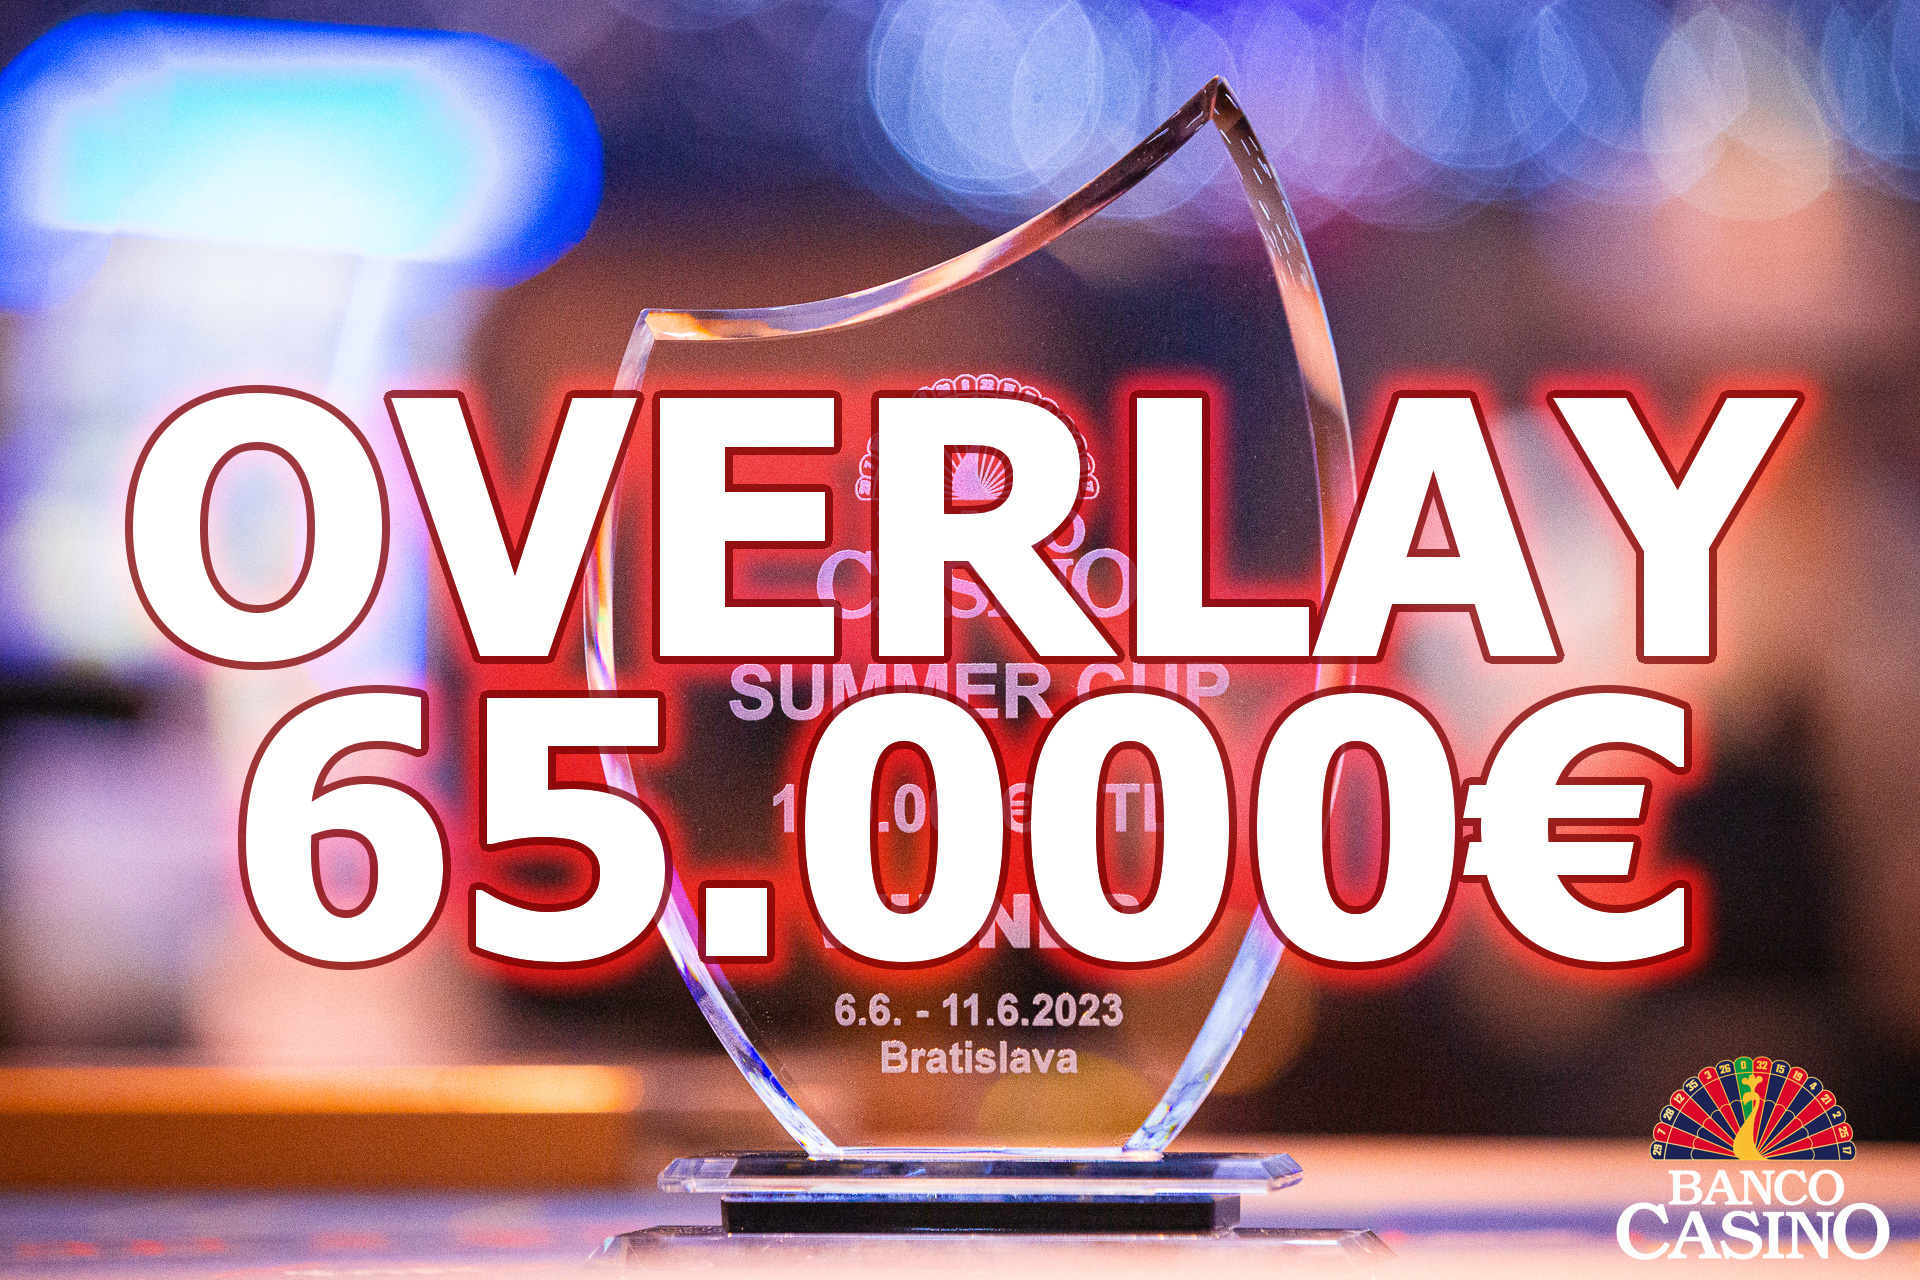 Summer Cup im Banco Casino – OVERLAY € 65.000 und nur 35 Spieler bisher am Finaltag dabei!